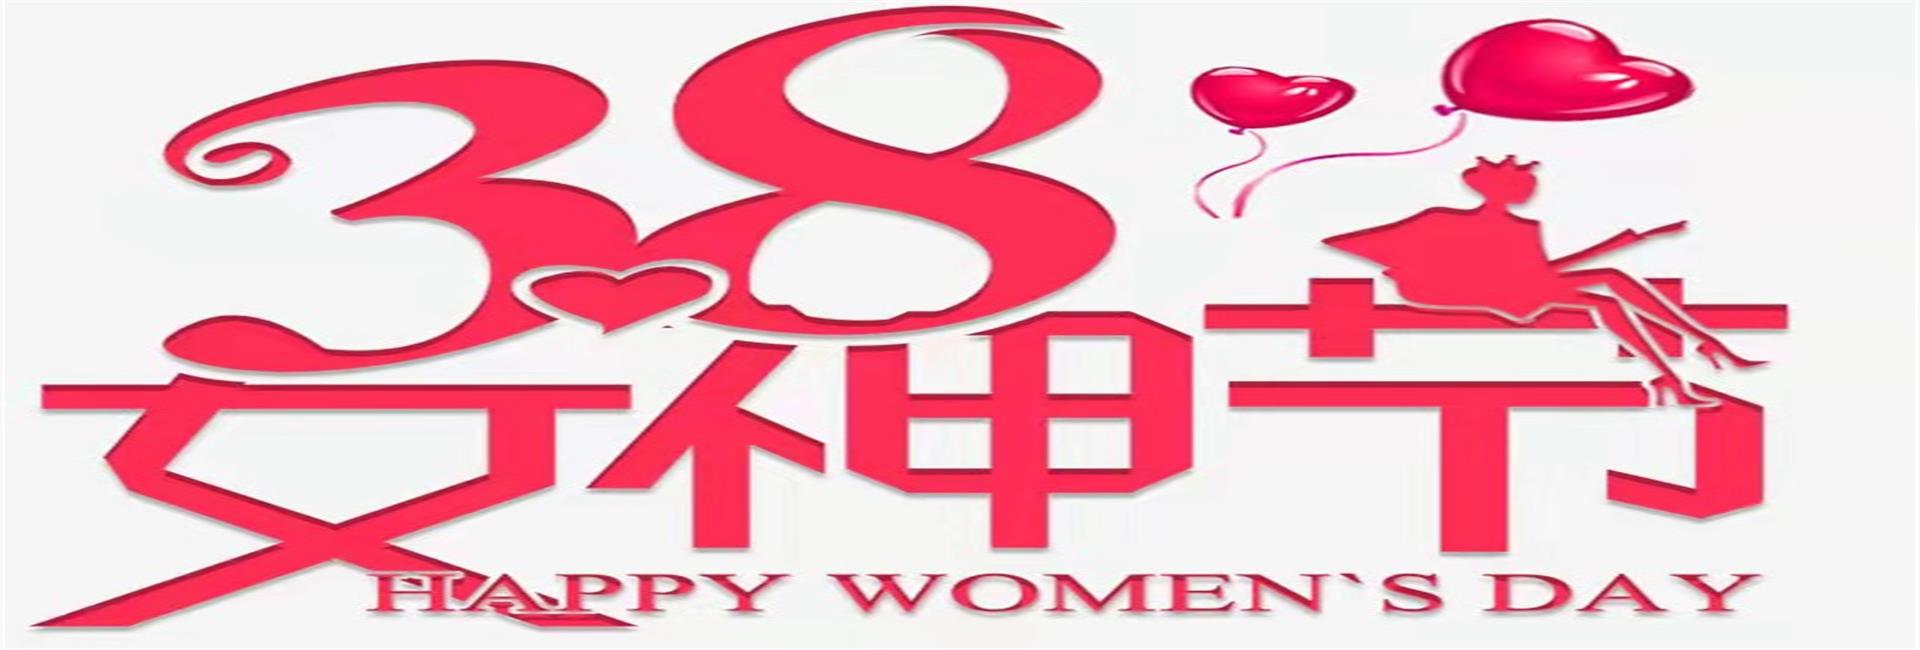 滨州正信祝愿全体妇女，女神节快乐！